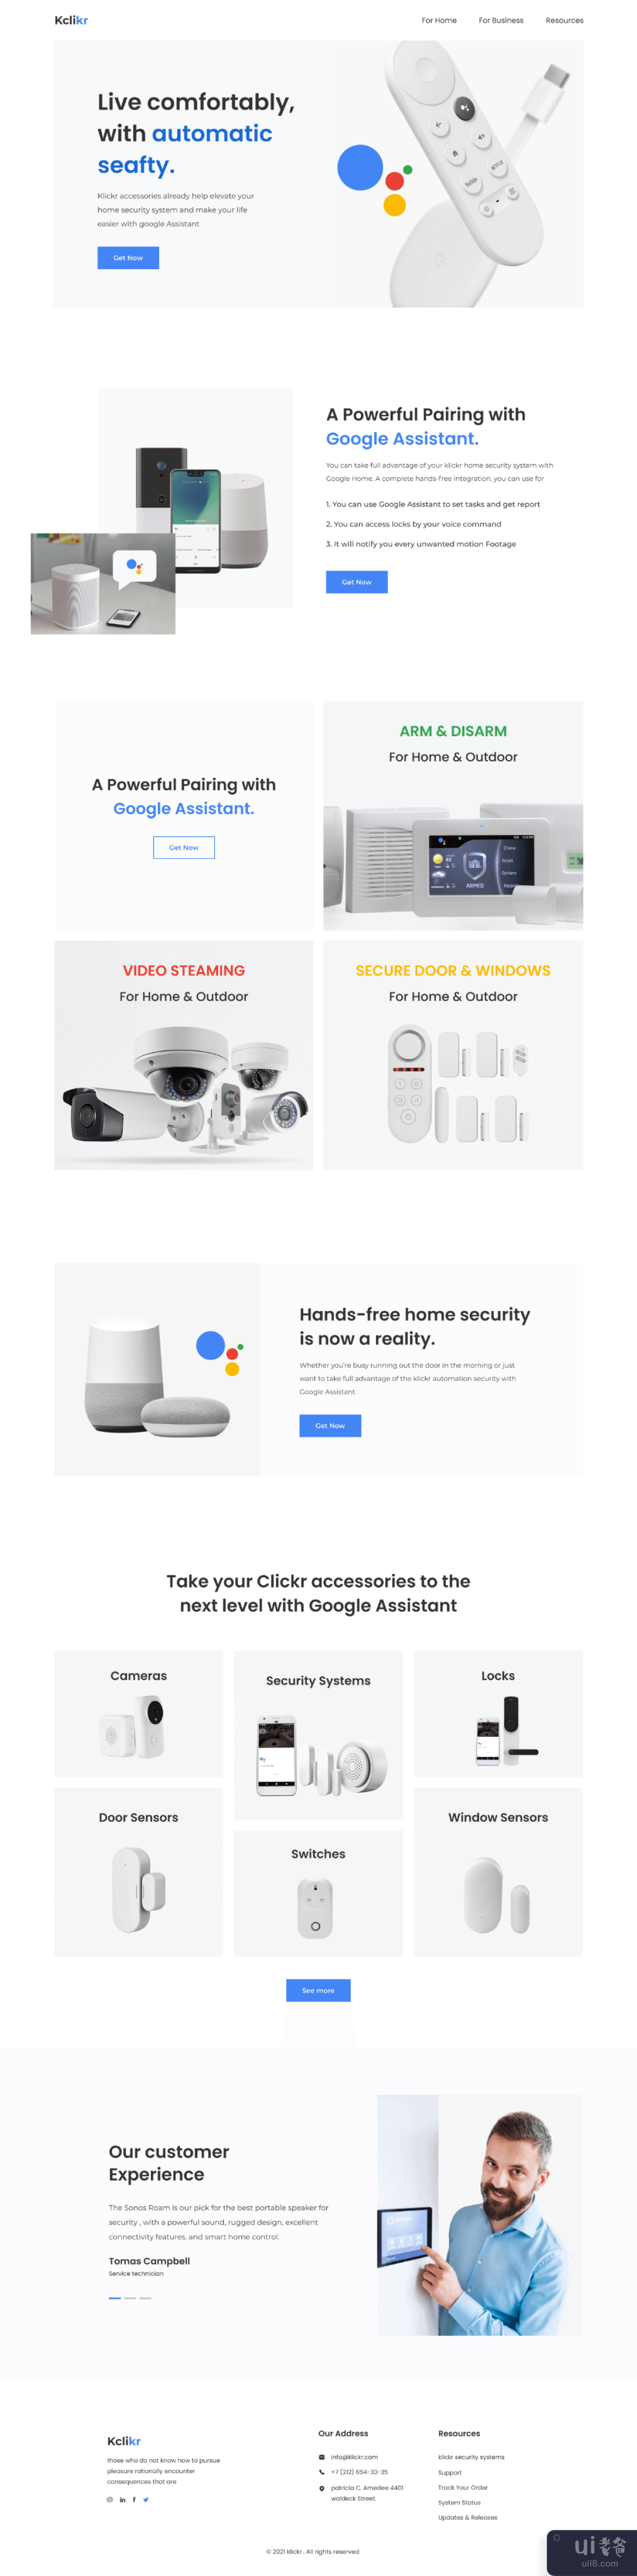 谷歌助手兼容的安全系统。(Google assistant compatible security system.)插图